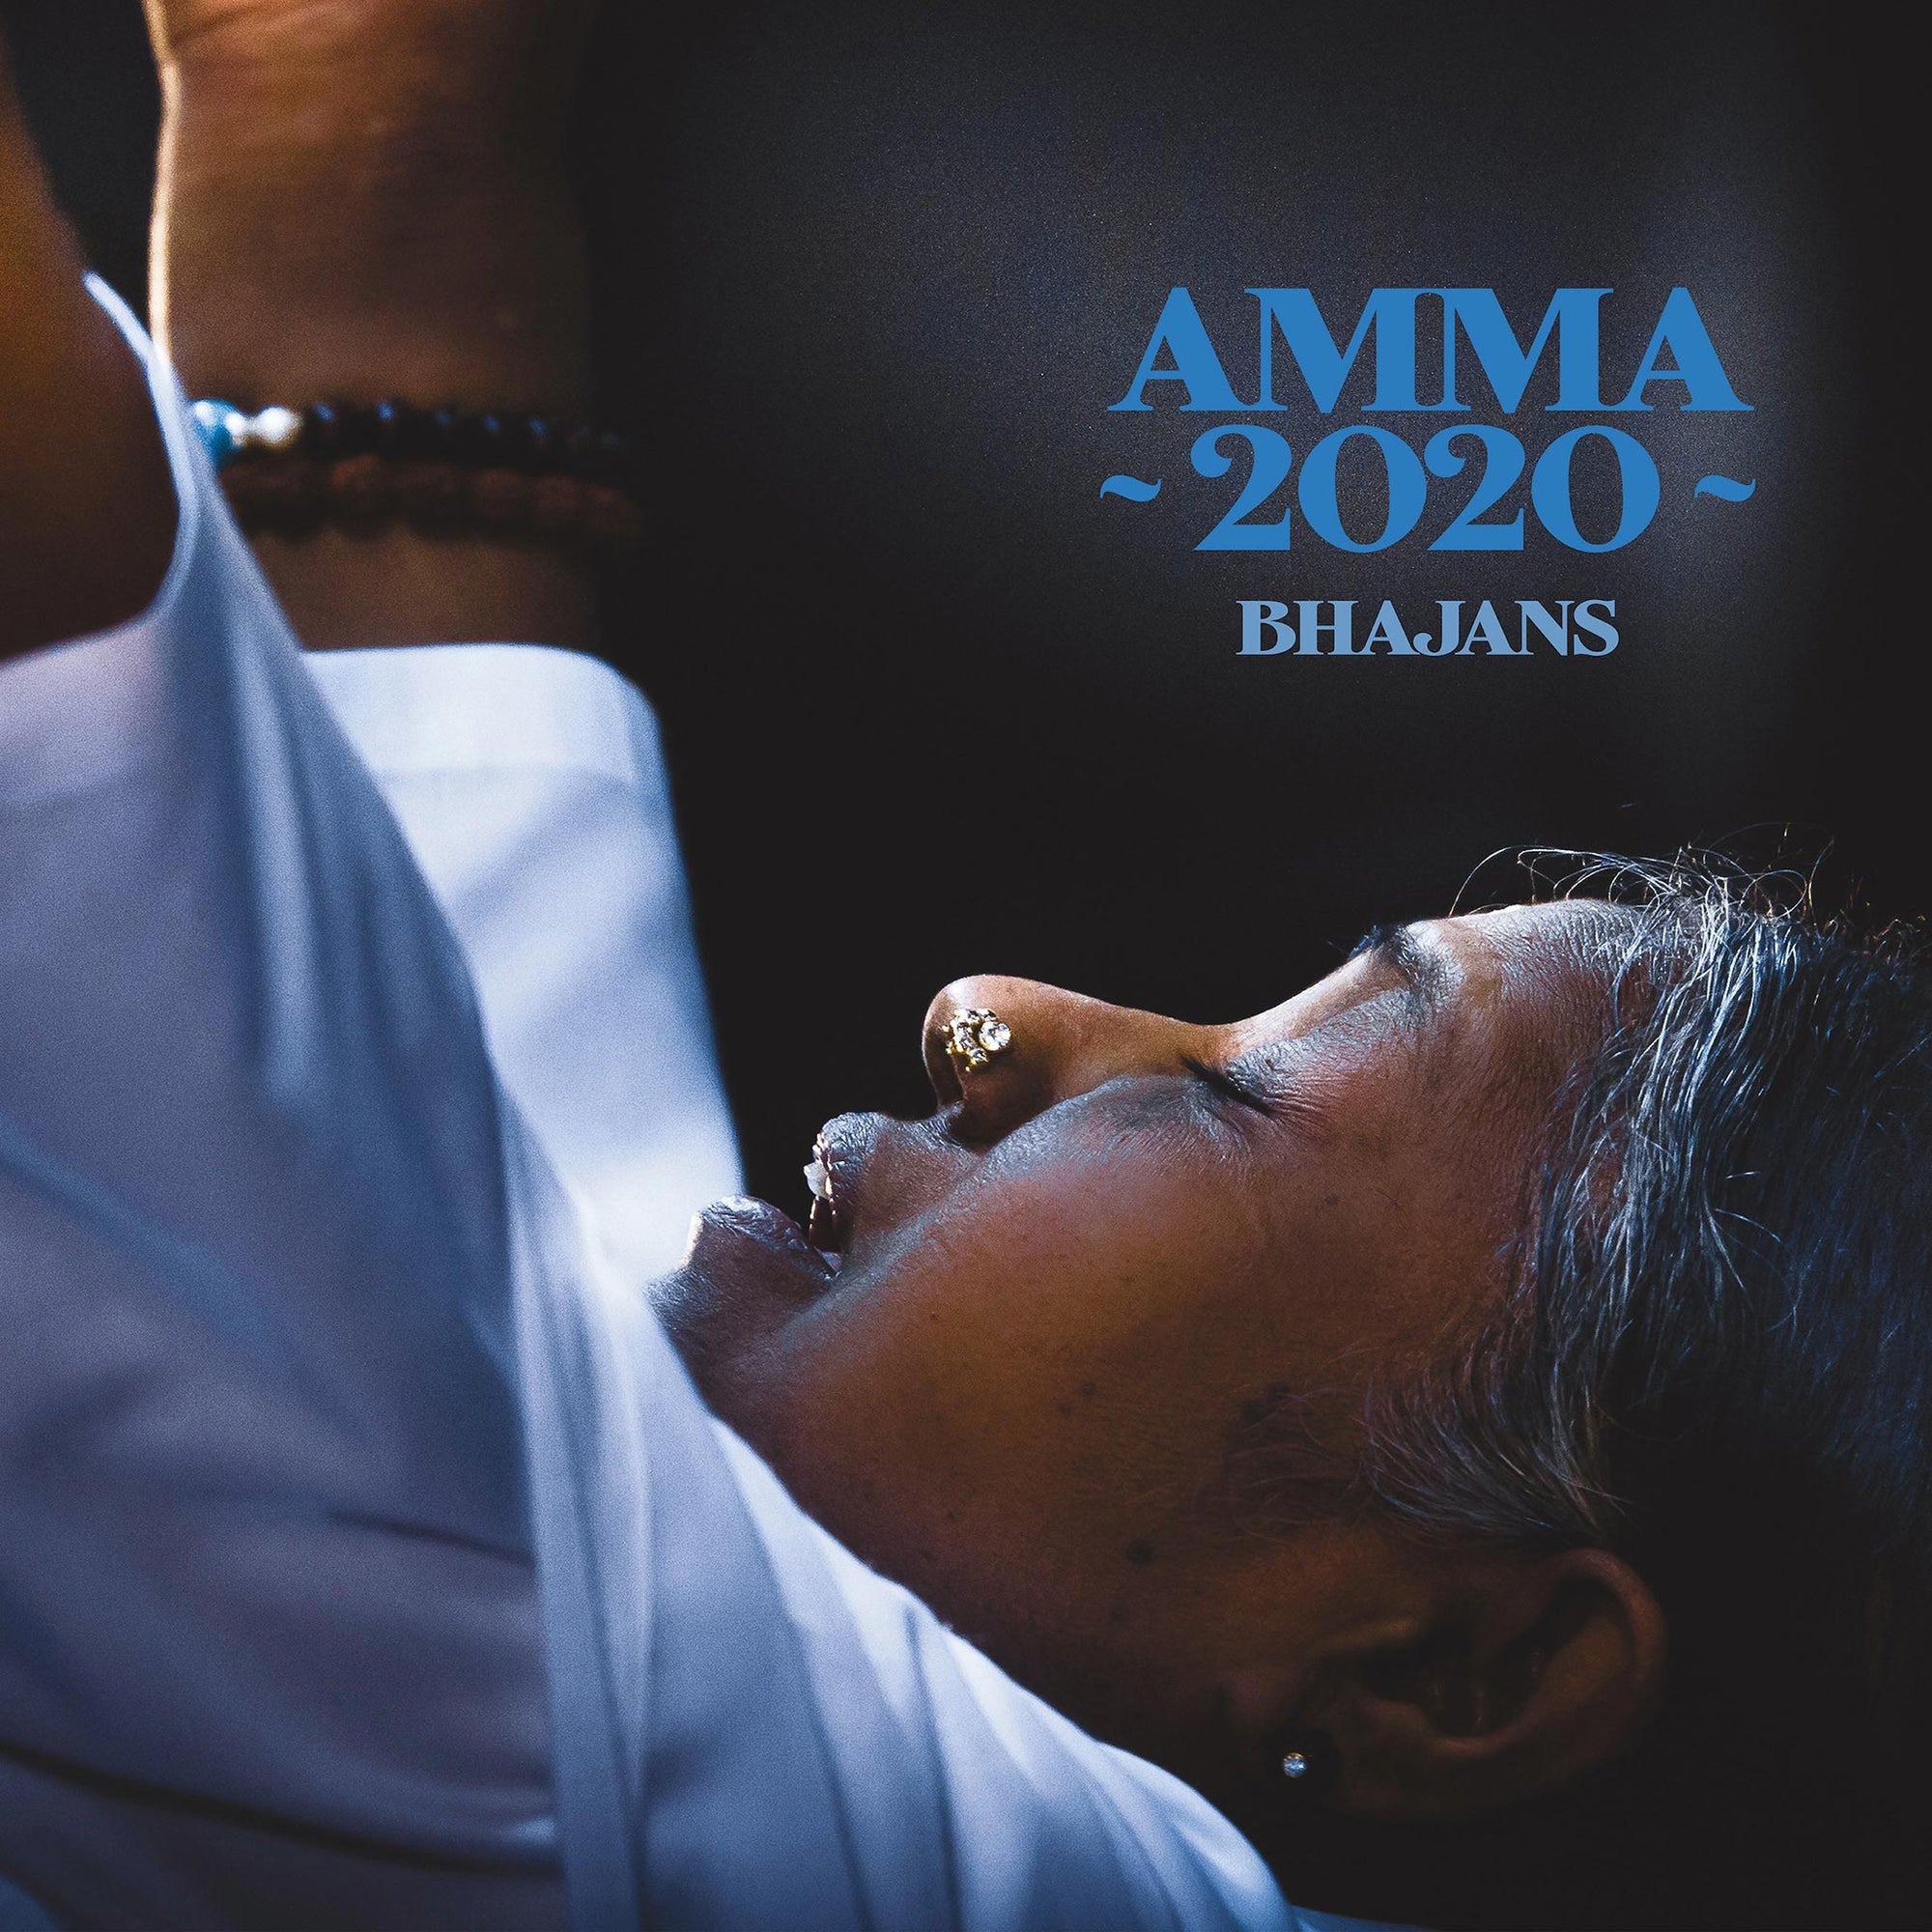 Amma 2020 Bhajans - HINDI (Digital)